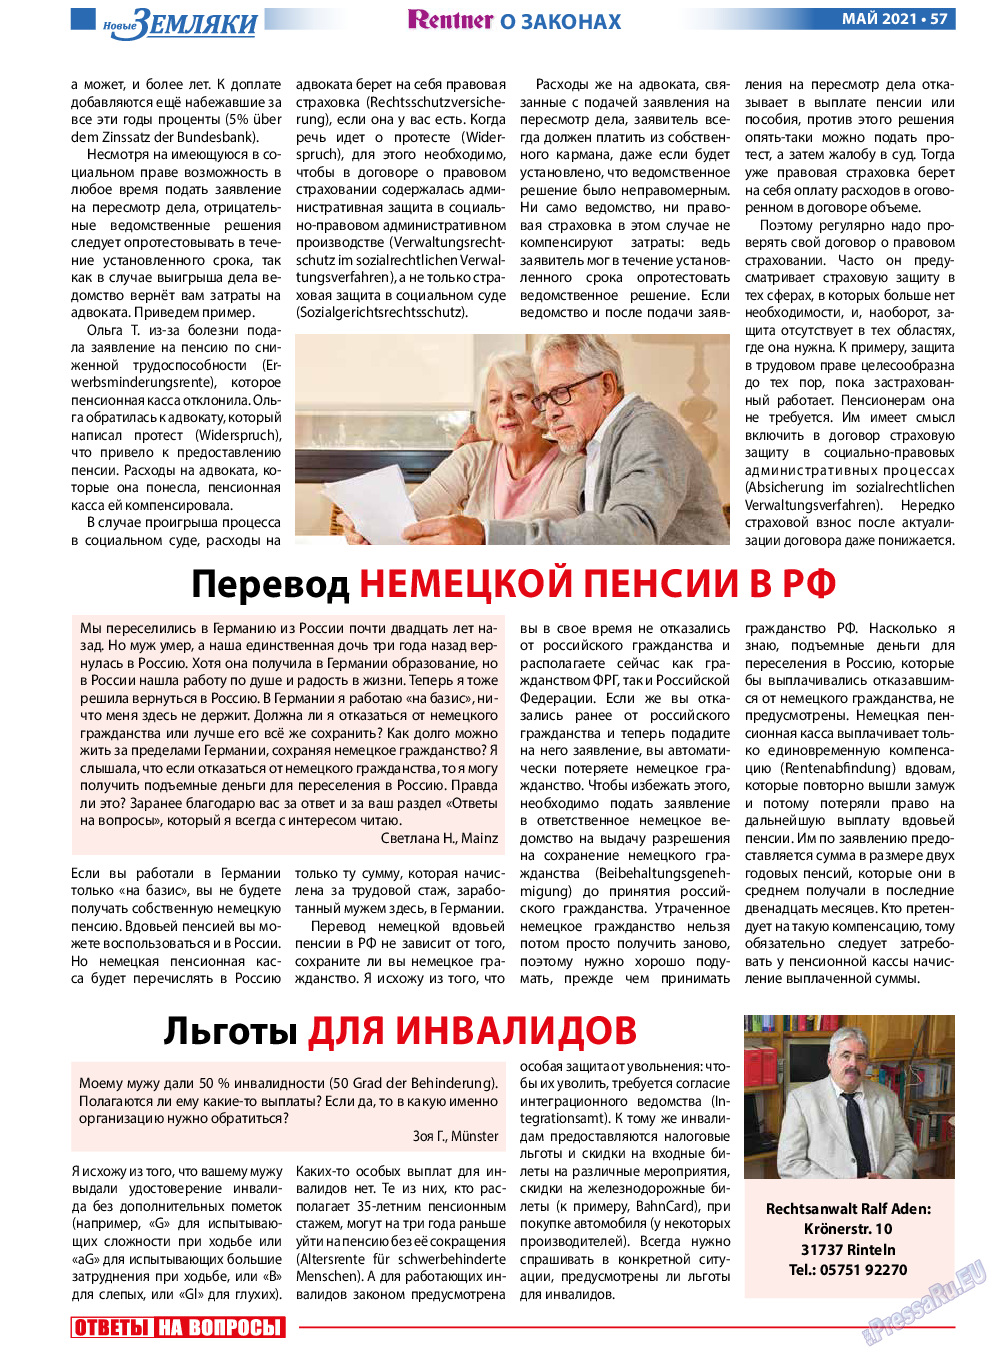 Новые Земляки, газета. 2021 №5 стр.57